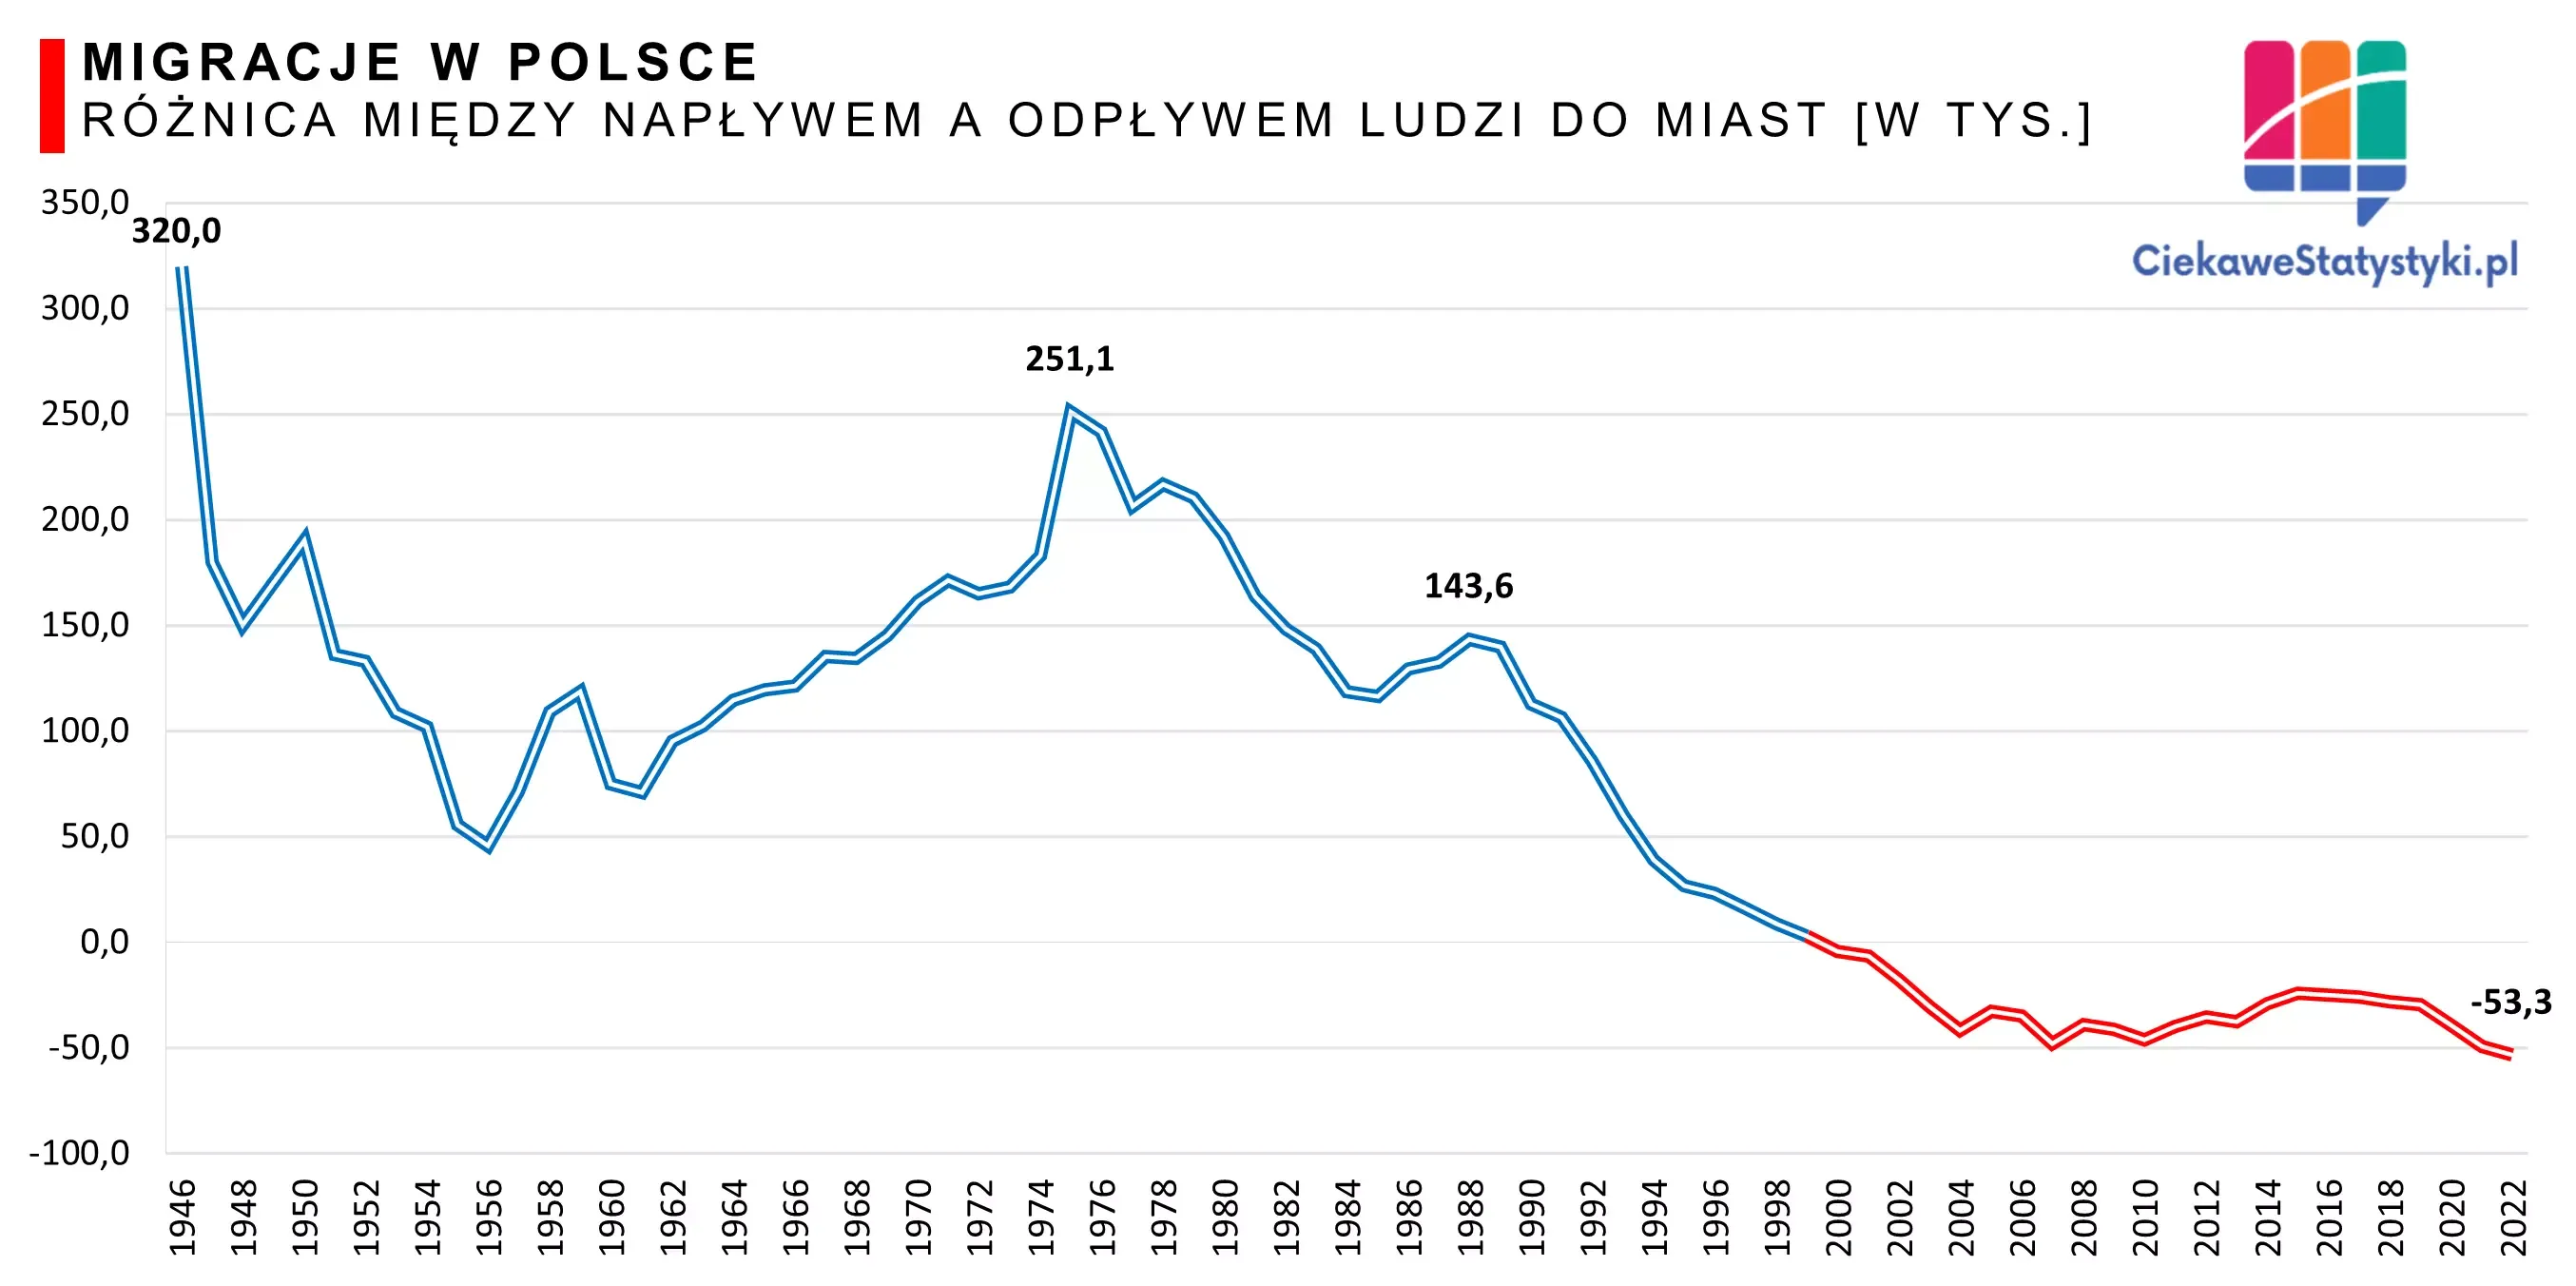 Wykres pokazuje ile osób migrowało ze wsi do miast w Polsce